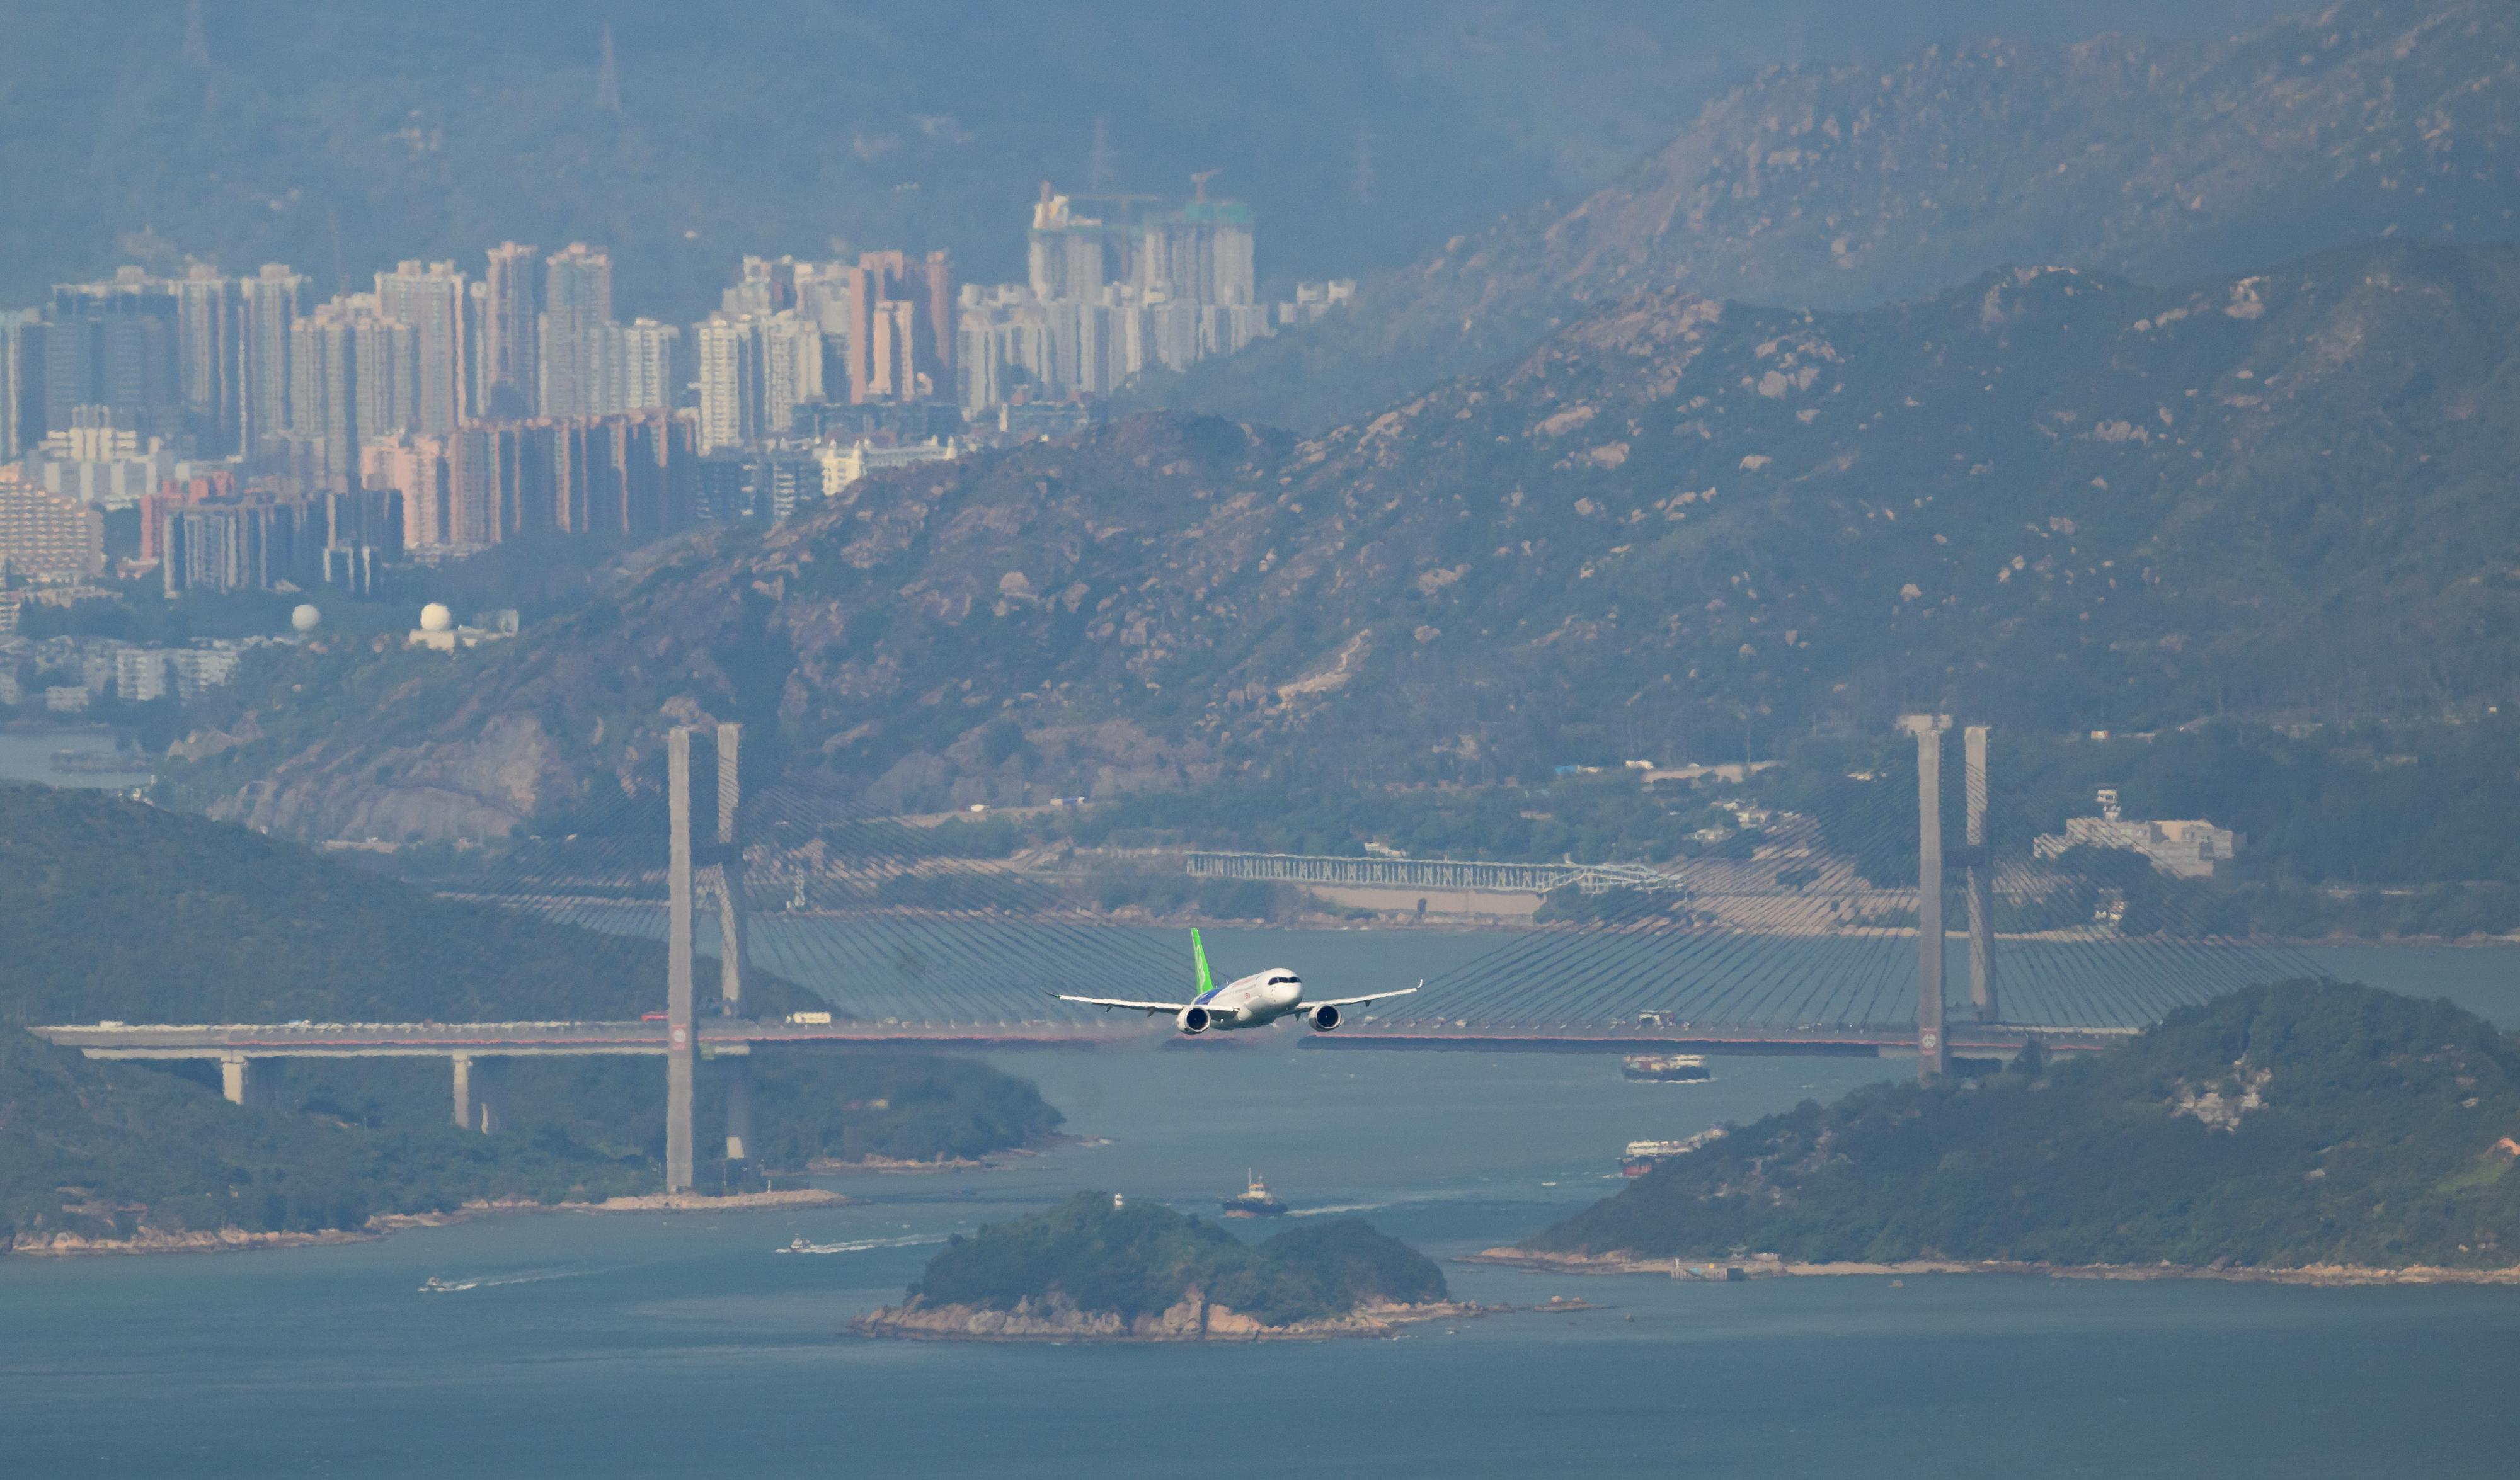 国家自主研制的C919飞机今日（十二月十六日）上午顺利完成飞行演示。图示C919飞机正由香港国际机场飞往维多利亚港进行飞行展示。

